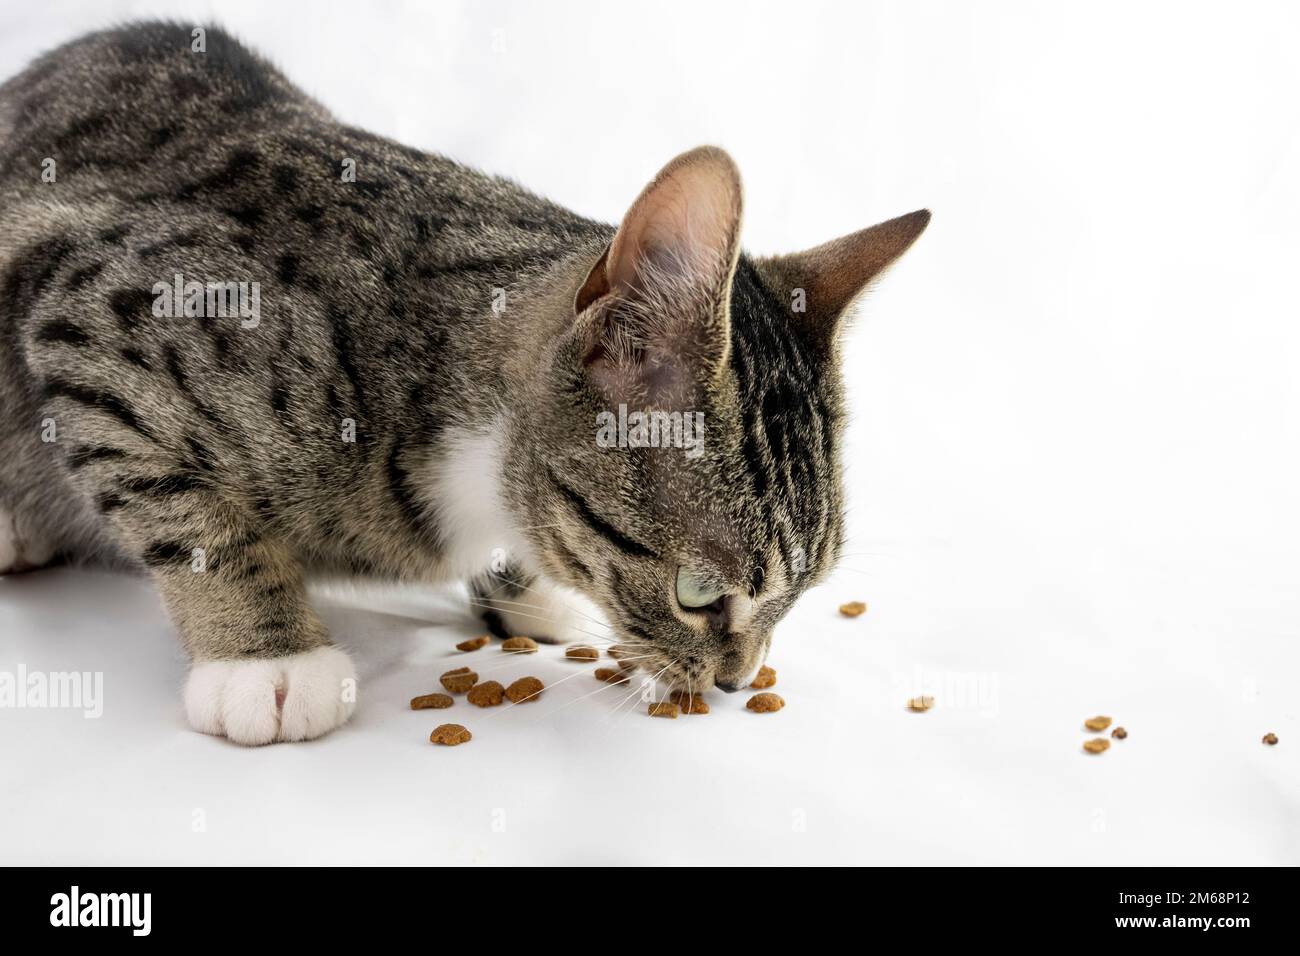 Régime et nutrition des animaux montrant un chat mangeant de la nourriture sur fond blanc Banque D'Images